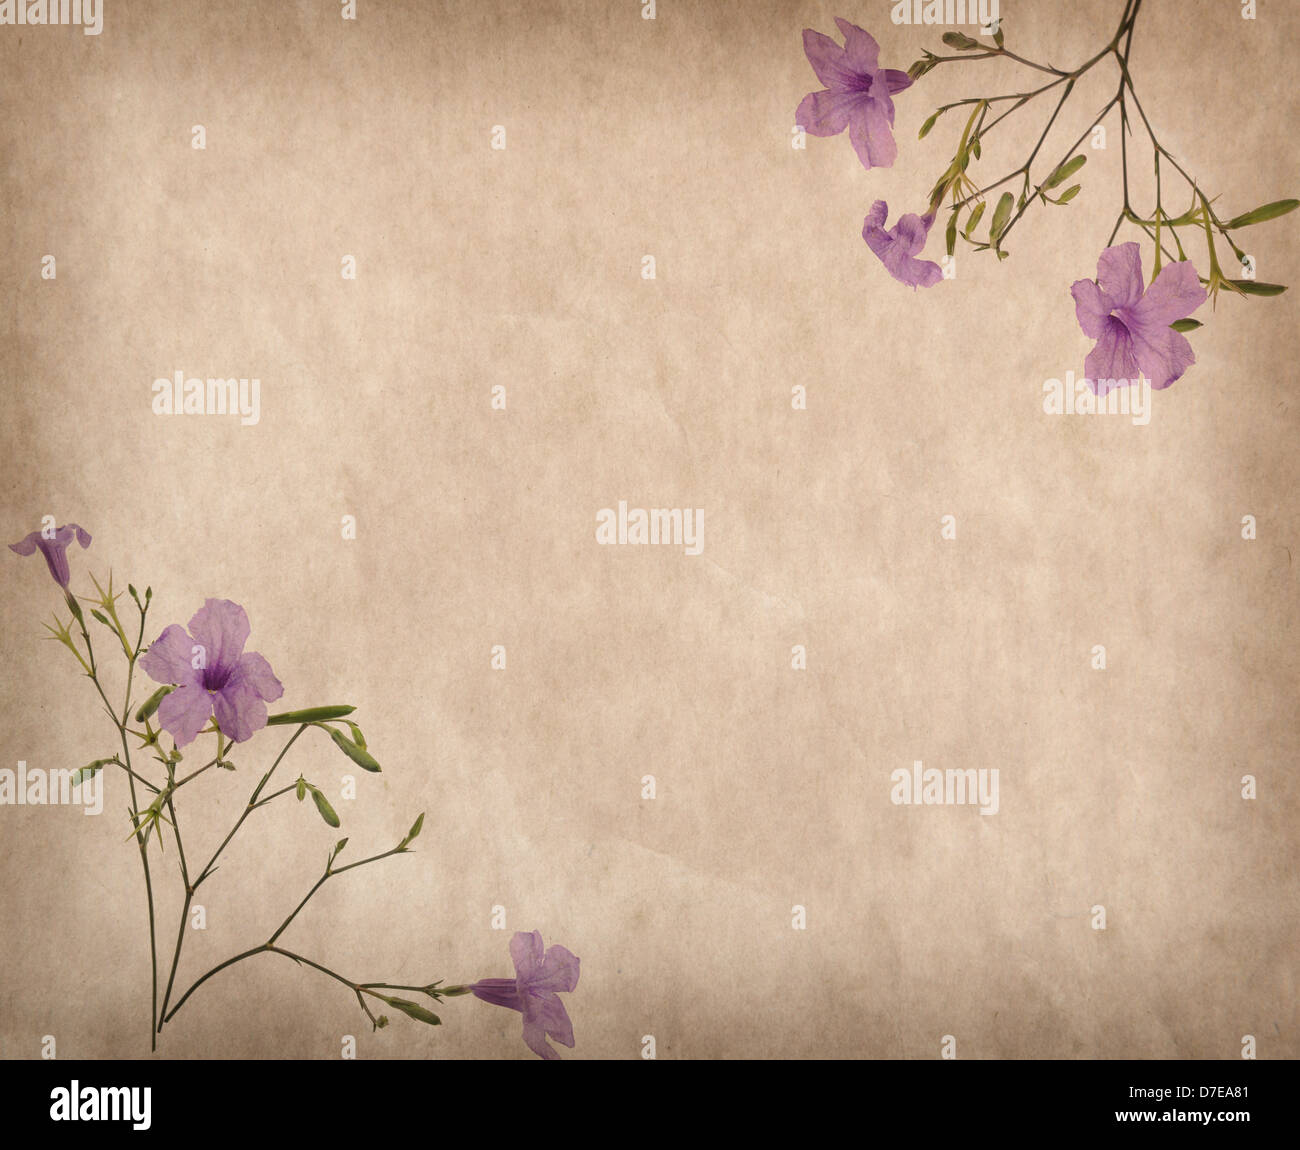 Nếu bạn yêu thích hoa tím, hãy thưởng thức màn hình nền này với hoa tím trên nền giấy cổ xưa chụp ảnh hàng tồn kho. Với vẻ đẹp uốn lượn và sắc màu tươi sáng, hình ảnh này sẽ mang đến cho bạn cảm giác ngọt ngào như những đóa hoa tím thực sự!